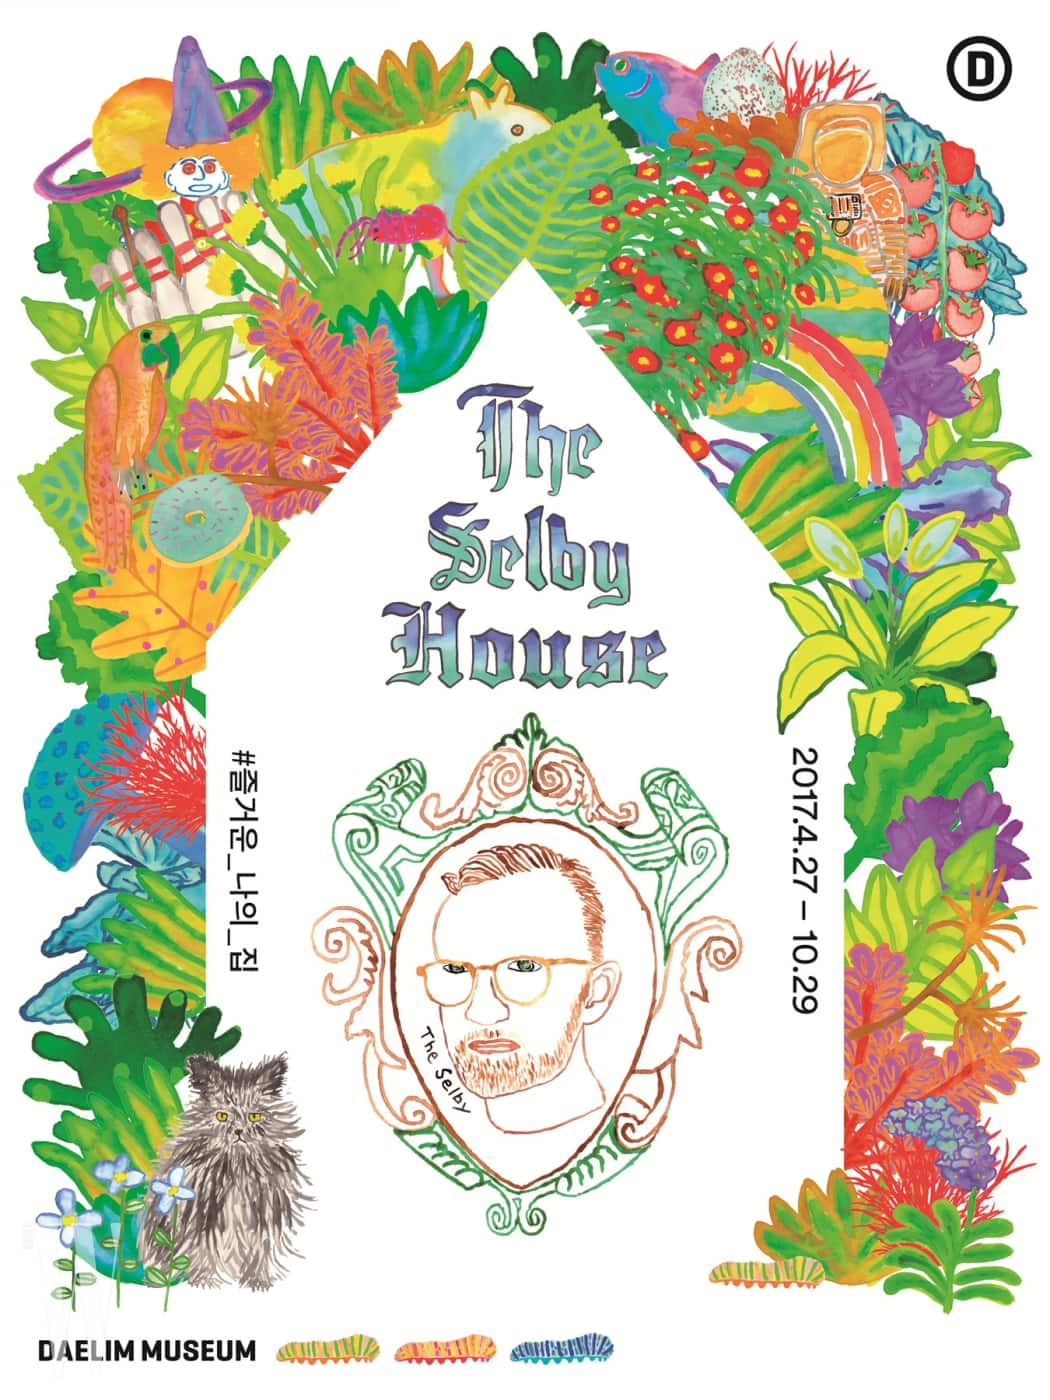 [보도자료]대림미술관_The Selby House_#즐거운_나의_집_포스터